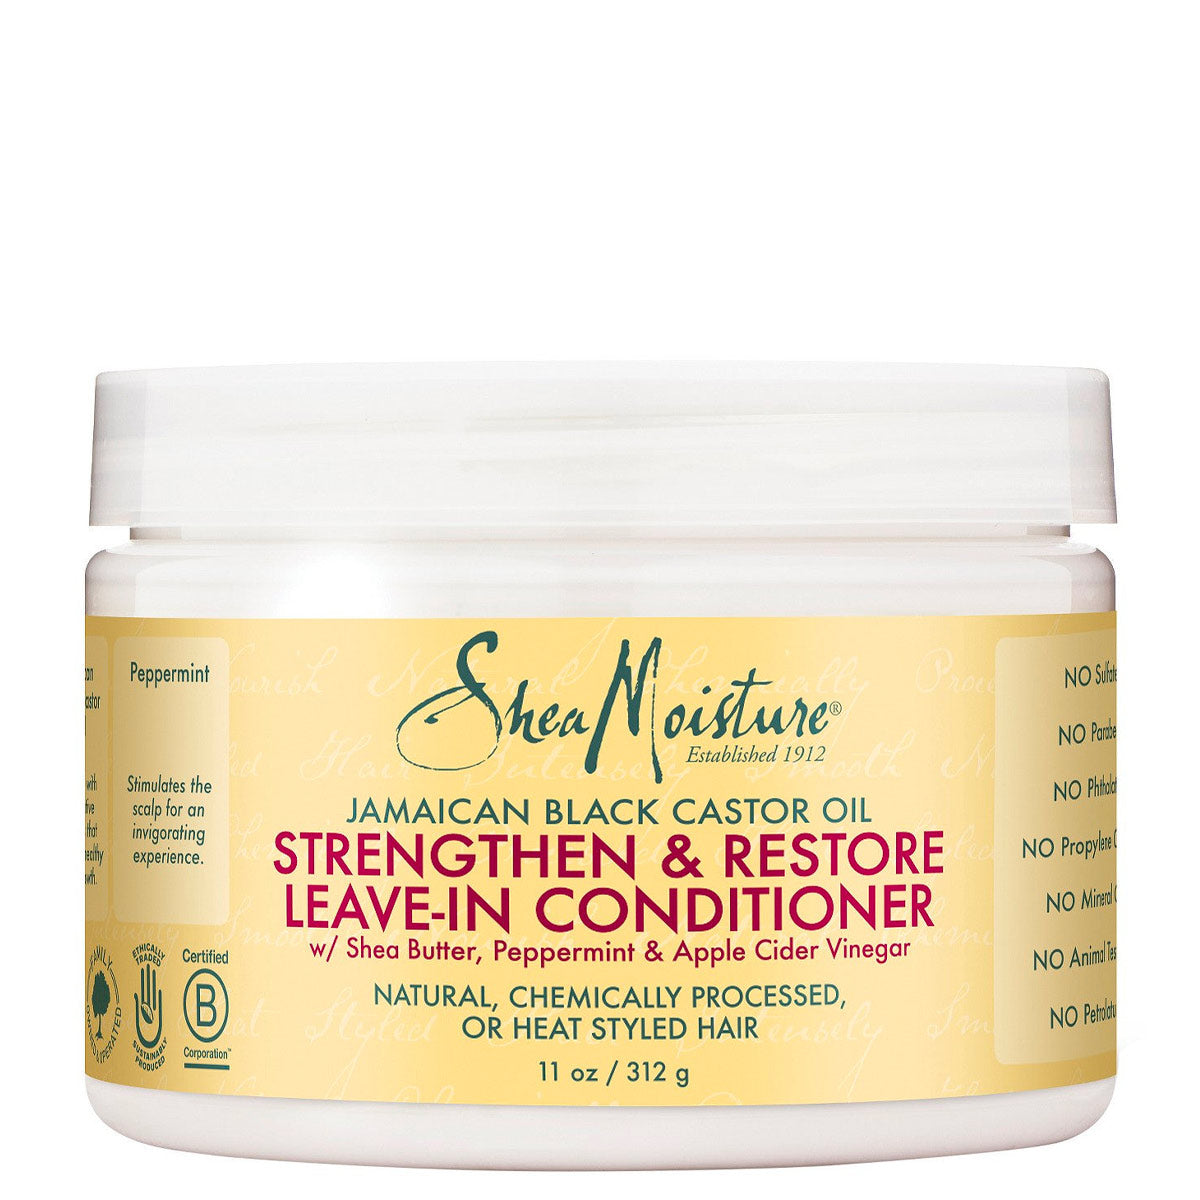 Shea Moisture JBCO Leave-In Conditioner nourrit, hydrate et procure une élasticité a vos cheveux pour les rendre plus résistants et plus faciles à démêler.